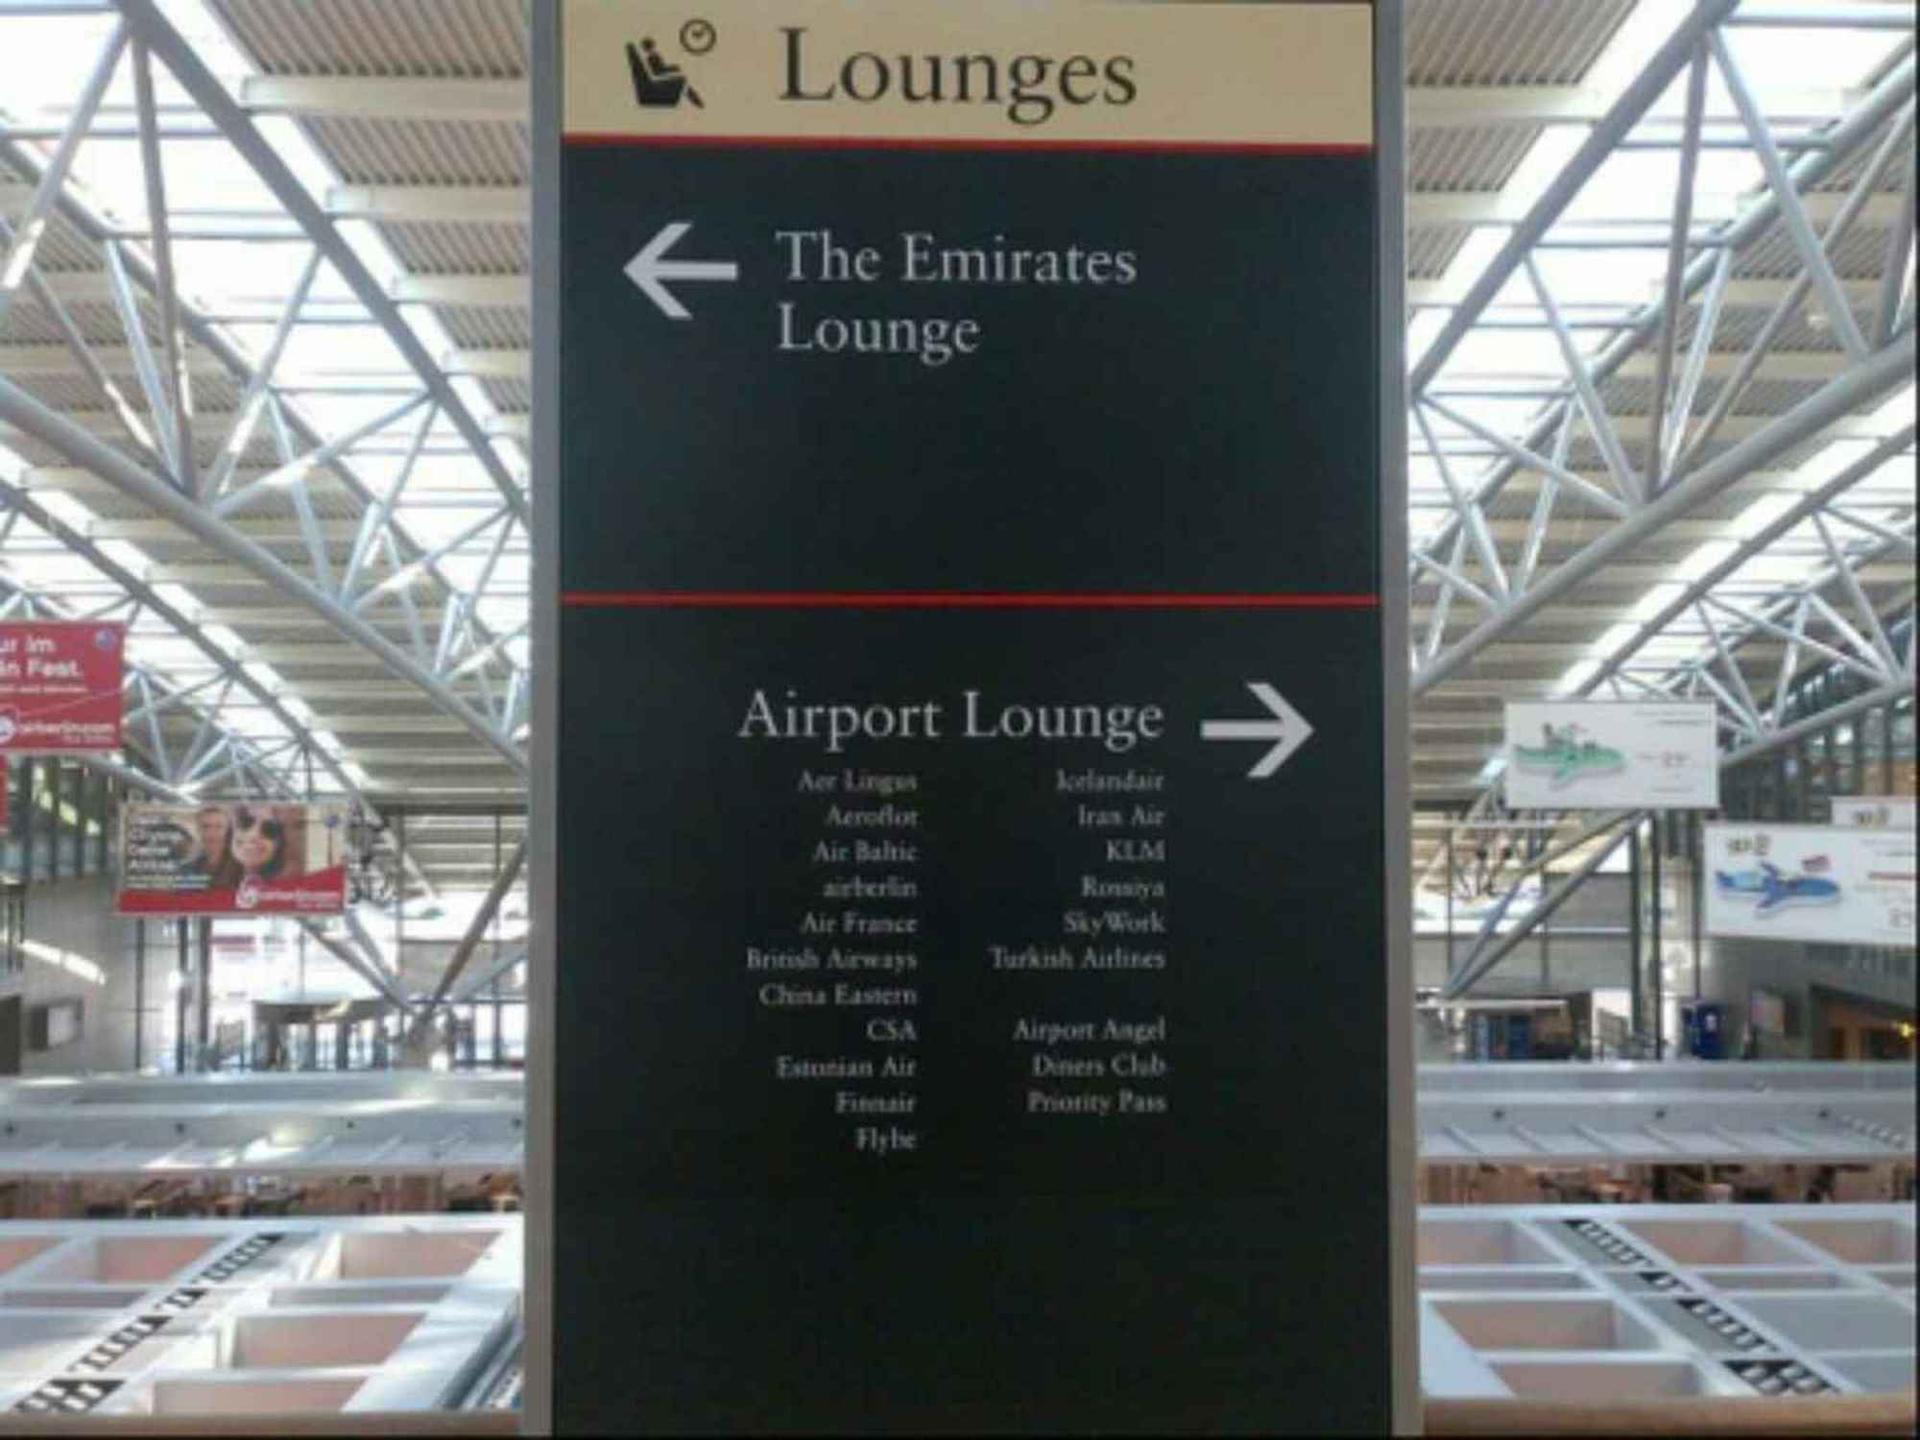 The Emirates Lounge image 3 of 3